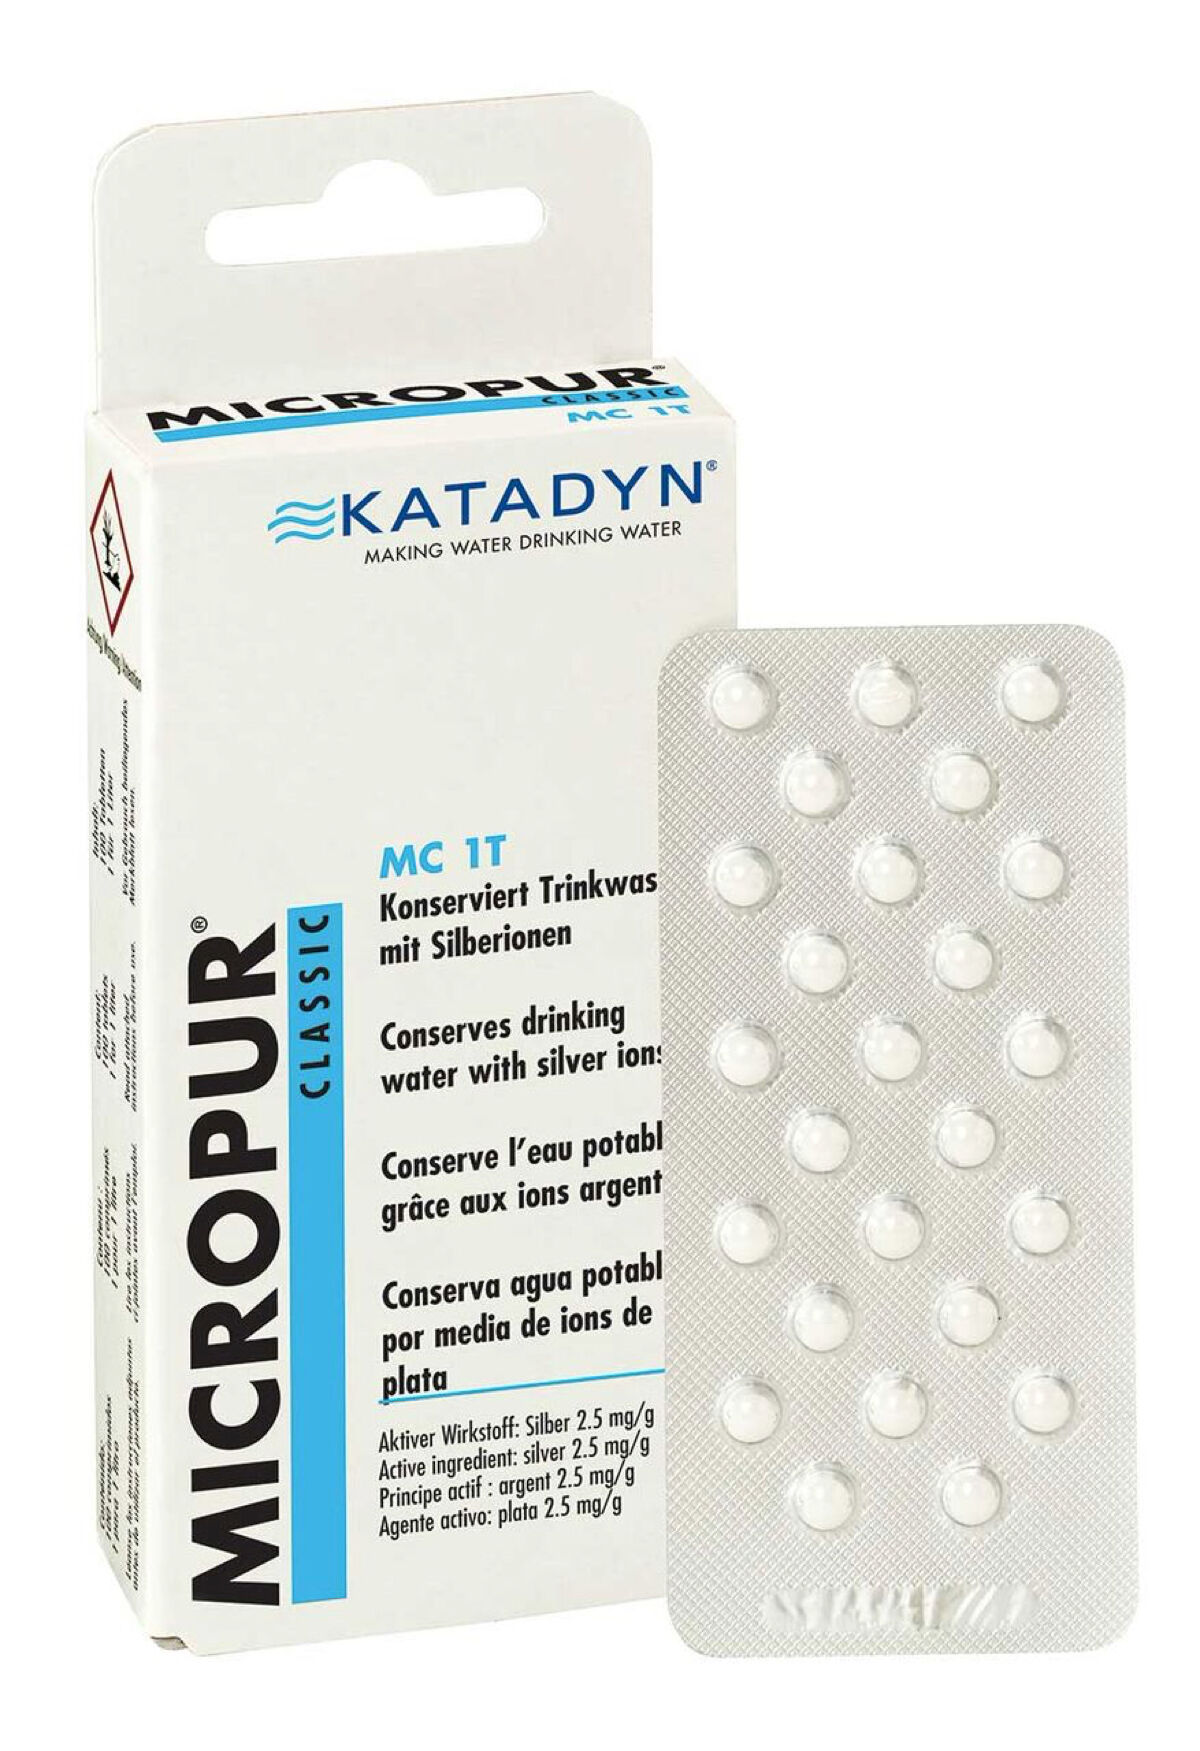 Katadyn Micropur Classic MC 1T (100) - Waterfilter